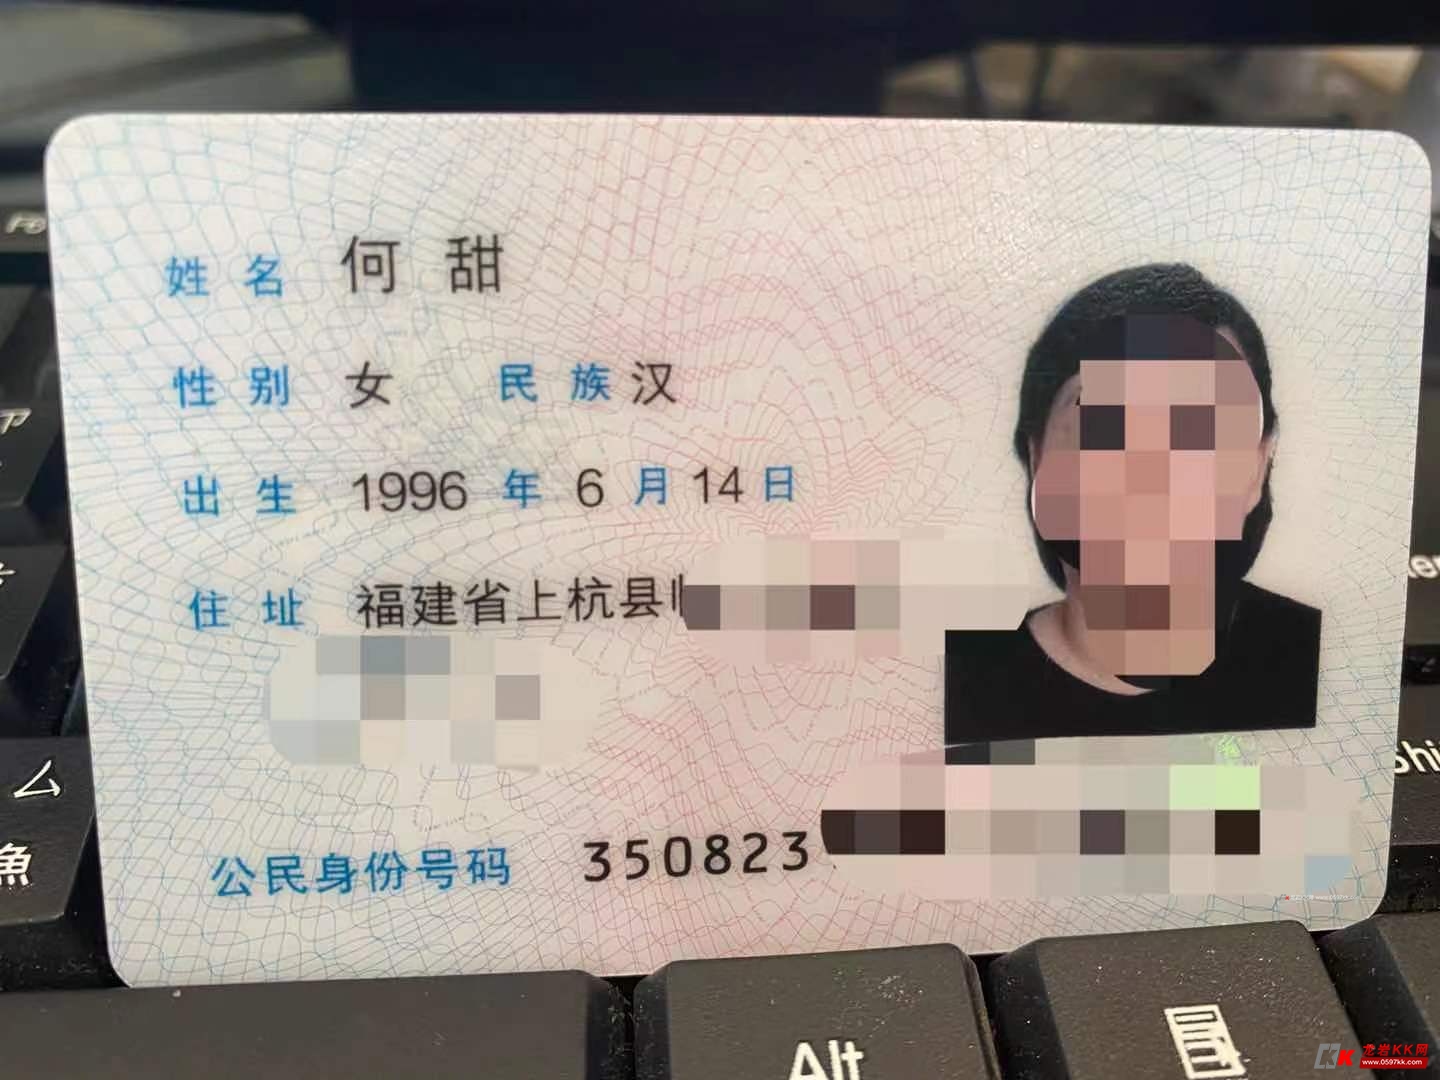 身份证照片是多大尺寸的？